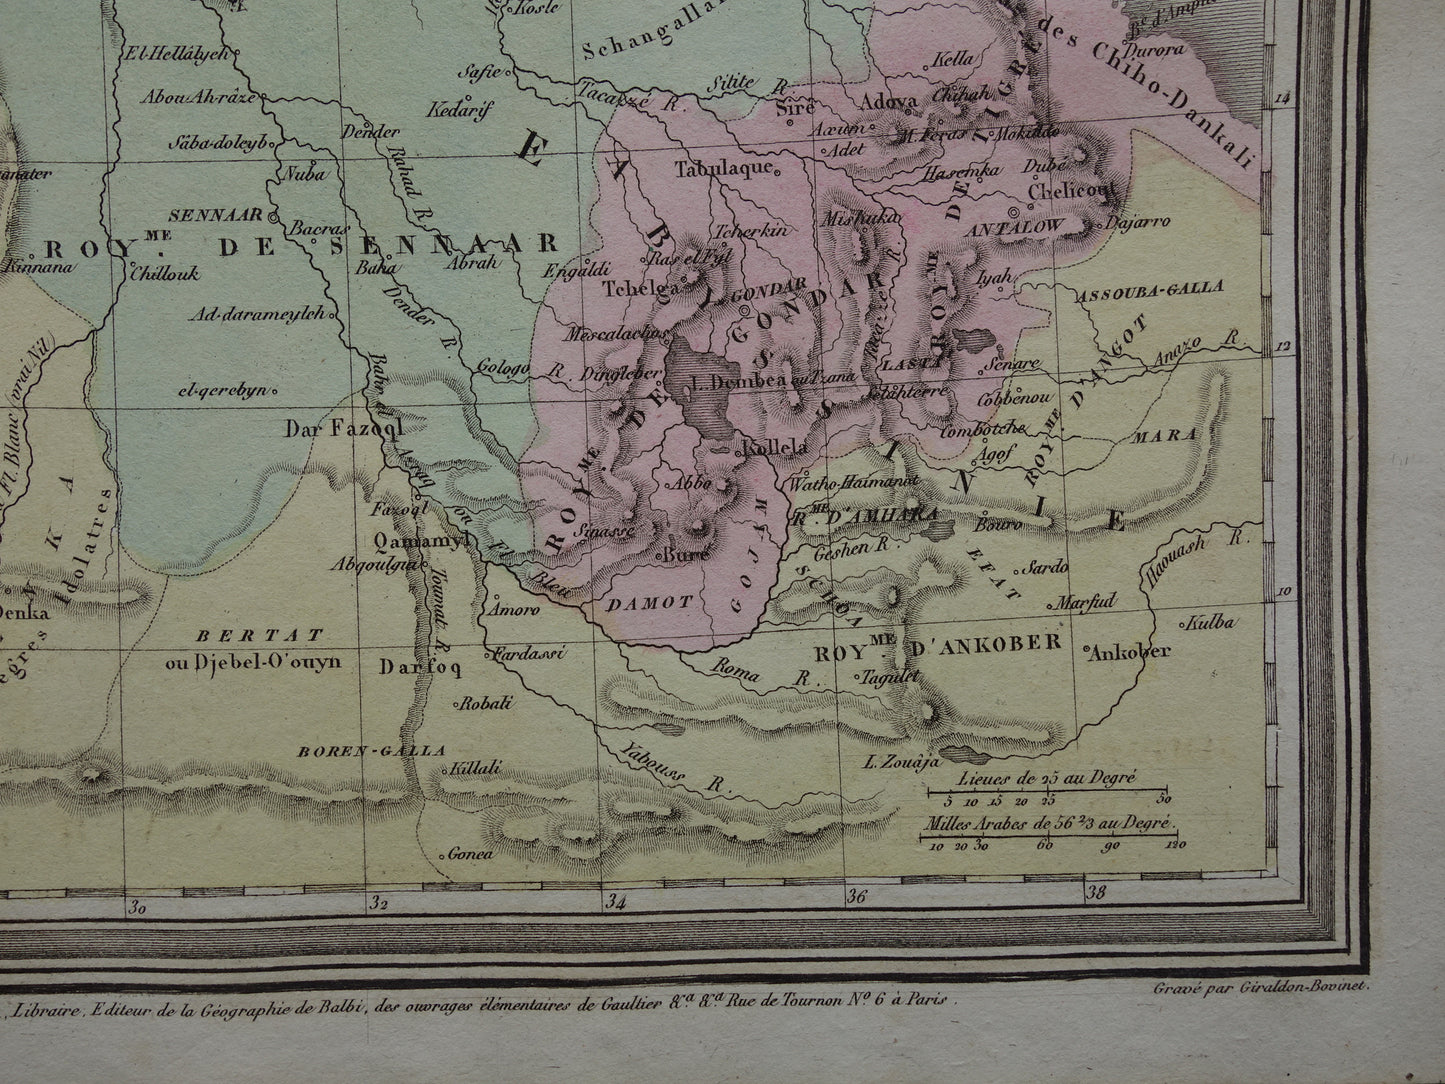 Oude kaart van Egypte Soedan Ethiopië 180+ jaar oude Franse handgekleurde landkaart Nubië Abessinië uit 1838